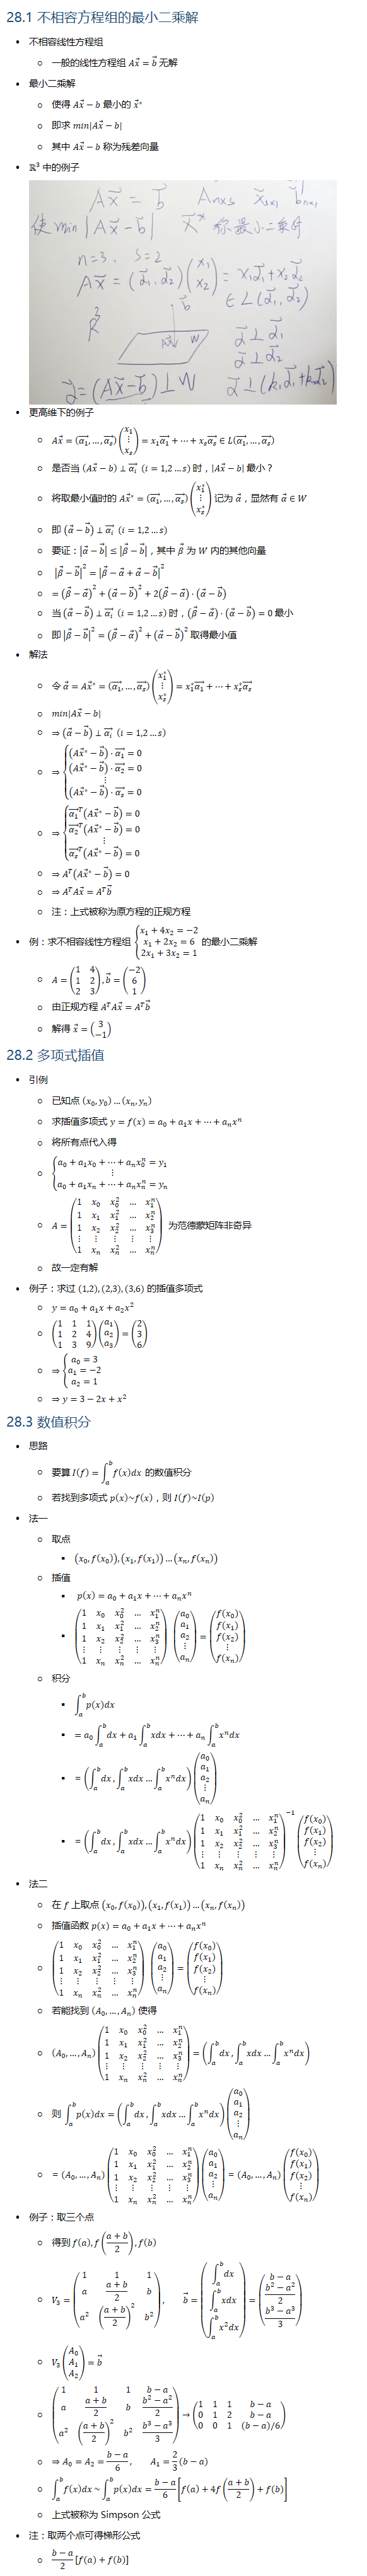 28.1 不相容方程组的最小二乘解 • 不相容线性方程组 ○ 一般的线性方程组 Ax ⃗=b ⃗ 无解 • 最小二乘解 ○ 使得 Ax ⃗−b 最小的 x ⃗^∗ ○ 即求 min⁡|Ax ⃗−b| ○ 其中 Ax ⃗−b 称为残差向量 • R3 中的例子 • 更高维下的例子 ○ Ax ⃗=((α_1 ) ⃗,…,(α_s ) ⃗ )(■8(x_1@⋮@x_s ))=x_1 (α_1 ) ⃗+…+x_s (α_s ) ⃗∈L((α_1 ) ⃗,…,(α_s ) ⃗ ) ○ 是否当 (Ax ⃗−b)⊥(α_i ) ⃗ (i=1,2…s) 时，|Ax ⃗−b| 最小？ ○ 将取最小值时的 Ax ⃗^∗=((α_1 ) ⃗,…,(α_s ) ⃗ )(■8(x_1^∗@⋮@x_s^∗ )) 记为 α ⃗，显然有 α ⃗∈W ○ 即 (α ⃗−b ⃗ )⊥(α_i ) ⃗ (i=1,2…s) ○ 要证：|α ⃗−b ⃗ |≤|β ⃗−b ⃗ |，其中 β ⃗ 为 W 内的其他向量 ○ |β ⃗−b ⃗ |^2=|β ⃗−α ⃗+α ⃗−b ⃗ |^2 ○ =(β ⃗−α ⃗ )^2+(α ⃗−b ⃗ )^2+2(β ⃗−α ⃗ )⋅(α ⃗−b ⃗ ) ○ 当 (α ⃗−b ⃗ )⊥(α_i ) ⃗ (i=1,2…s) 时，(β ⃗−α ⃗ )⋅(α ⃗−b ⃗ )=0 最小 ○ 即 |β ⃗−b ⃗ |^2=(β ⃗−α ⃗ )^2+(α ⃗−b ⃗ )^2 取得最小值 • 解法 ○ 令 α ⃗=Ax ⃗^∗=((α_1 ) ⃗,…,(α_s ) ⃗ )(■8(x_1^∗@⋮@x_s^∗ ))=x_1^∗ (α_1 ) ⃗+…+x_s^∗ (α_s ) ⃗ ○ min⁡|Ax ⃗−b| ○ ⇒(α ⃗−b ⃗ )⊥(α_i ) ⃗ (i=1,2…s) ○ ⇒{█((Ax ⃗^∗−b ⃗ )⋅(α_1 ) ⃗=0@(Ax ⃗^∗−b ⃗ )⋅(α_2 ) ⃗=0@⋮@(Ax ⃗^∗−b ⃗ )⋅(α_s ) ⃗=0)┤ ○ ⇒{█((α_1 ) ⃗^T (Ax ⃗^∗−b ⃗ )=0@(α_2 ) ⃗^T (Ax ⃗^∗−b ⃗ )=0@⋮@(α_s ) ⃗^T (Ax ⃗^∗−b ⃗ )=0)┤ ○ ⇒A^T (Ax ⃗^∗−b ⃗ )=0 ○ ⇒A^T Ax ⃗=A^T b ⃗ ○ 注：上式被称为原方程的正规方程 • 例：求不相容线性方程组 {█(x_1+4x_2=−2@x_1+2x_2=6@2x_1+3x_2=1)┤ 的最小二乘解 ○ A=(■8(1&4@1&2@2&3)), b ⃗=(■8(−2@6@1)) ○ 由正规方程 A^T Ax ⃗=A^T b ⃗ ○ 解得 x ⃗=(■8(3@−1)) 28.2 多项式插值 • 引例 ○ 已知点 (x_0,y_0 )…(x_n,y_n ) ○ 求插值多项式 y=f(x)=a_0+a_1 x+…+a_n x^n ○ 将所有点代入得 ○ {█(a_0+a_1 x_0+…+a_n x_0^n=y_1@⋮@a_0+a_1 x_n+…+a_n x_n^n=y_n )┤ ○ A=(■8(1&x_0&x_0^2&…&x_1^n@1&x_1&x_1^2&…&x_2^n@1&x_2&x_2^2&…&x_3^n@⋮&⋮&⋮&⋮&⋮@1&x_n&x_n^2&…&x_n^n )) 为范德蒙矩阵非奇异 ○ 故一定有解 • 例子：求过 (1,2),(2,3),(3,6) 的插值多项式 ○ y=a_0+a_1 x+a_2 x^2 ○ (■8(1&1&1@1&2&4@1&3&9))(■8(a_1@a_2@a_3 ))=(■8(2@3@6)) ○ ⇒{█(a_0=3@a_1=−2@a_2=1)┤ ○ ⇒y=3−2x+x^2 28.3 数值积分 • 思路 ○ 要算 I(f)=∫_a^b▒f(x)dx 的数值积分 ○ 若找到多项式 p(x)~f(x)，则 I(f)~I(p) • 法一 ○ 取点 § (x_0,f(x_0 )),(x_1,f(x_1 ))…(x_n,f(x_n )) ○ 插值 § p(x)=a_0+a_1 x+…+a_n x^n § (■8(1&x_0&x_0^2&…&x_1^n@1&x_1&x_1^2&…&x_2^n@1&x_2&x_2^2&…&x_3^n@⋮&⋮&⋮&⋮&⋮@1&x_n&x_n^2&…&x_n^n )) (■8(a_0@a_1@a_2@⋮@a_n ))=(■8(f(x_0)@f(x_1)@f(x_2)@⋮@f(x_n))) ○ 积分 § ∫_a^b▒p(x)dx § =a_0 ∫_a^b▒dx+a_1 ∫_a^b▒xdx+…+a_n ∫_a^b▒〖x^n dx〗 § =(∫_a^b▒dx,∫_a^b▒xdx…∫_a^b▒〖x^n dx〗)(■8(a_0@a_1@a_2@⋮@a_n )) § =(∫_a^b▒dx,∫_a^b▒xdx…∫_a^b▒〖x^n dx〗) (■8(1&x_0&x_0^2&…&x_1^n@1&x_1&x_1^2&…&x_2^n@1&x_2&x_2^2&…&x_3^n@⋮&⋮&⋮&⋮&⋮@1&x_n&x_n^2&…&x_n^n ))^(−1) (■8(f(x_0)@f(x_1)@f(x_2)@⋮@f(x_n))) • 法二 ○ 在 f 上取点 (x_0,f(x_0 )),(x_1,f(x_1 ))…(x_n,f(x_n )) ○ 插值函数 p(x)=a_0+a_1 x+…+a_n x^n ○ (■8(1&x_0&x_0^2&…&x_1^n@1&x_1&x_1^2&…&x_2^n@1&x_2&x_2^2&…&x_3^n@⋮&⋮&⋮&⋮&⋮@1&x_n&x_n^2&…&x_n^n )) (■8(a_0@a_1@a_2@⋮@a_n ))=(■8(f(x_0)@f(x_1)@f(x_2)@⋮@f(x_n))) ○ 若能找到 (A_0,…,A_n ) 使得 ○ (A_0,…,A_n )(■8(1&x_0&x_0^2&…&x_1^n@1&x_1&x_1^2&…&x_2^n@1&x_2&x_2^2&…&x_3^n@⋮&⋮&⋮&⋮&⋮@1&x_n&x_n^2&…&x_n^n ))=(∫_a^b▒dx,∫_a^b▒xdx…∫_a^b▒〖x^n dx〗) ○ 则 ∫_a^b▒p(x)dx=(∫_a^b▒dx,∫_a^b▒xdx…∫_a^b▒〖x^n dx〗)(■8(a_0@a_1@a_2@⋮@a_n )) ○ =(A_0,…,A_n )(■8(1&x_0&x_0^2&…&x_1^n@1&x_1&x_1^2&…&x_2^n@1&x_2&x_2^2&…&x_3^n@⋮&⋮&⋮&⋮&⋮@1&x_n&x_n^2&…&x_n^n ))(■8(a_0@a_1@a_2@⋮@a_n ))=(A_0,…,A_n )(■8(f(x_0)@f(x_1)@f(x_2)@⋮@f(x_n))) • 例子：取三个点 ○ 得到 f(a),f((a+b)/2),f(b) ○ V_3=(■8(1&1&1@a&(a+b)/2&b@a^2&((a+b)/2)^2&b^2 )), b ⃗=(■8(∫_a^b▒dx@∫_a^b▒xdx@∫_a^b▒〖x^2 dx〗))=(■8(b−a@(b^2−a^2)/2@(b^3−a^3)/3)) ○ V_3 (■8(A_0@A_1@A_2 ))=b ⃗ ○ (■8(1&1&1&b−a@a&(a+b)/2&b&(b^2−a^2)/2@a^2&((a+b)/2)^2&b^2&(b^3−a^3)/3))→(■8(1&1&1&b−a@0&1&2&b−a@0&0&1&(b−a)/6)) ○ ⇒A_0=A_2=(b−a)/6, A_1=2/3 (b−a) ○ ∫_a^b▒f(x)dx~∫_a^b▒p(x)dx=(b−a)/6 [f(a)+4f((a+b)/2)+f(b)] ○ 上式被称为 Simpson 公式 • 注：取两个点可得梯形公式 ○ (b−a)/2[f(a)+f(b)]